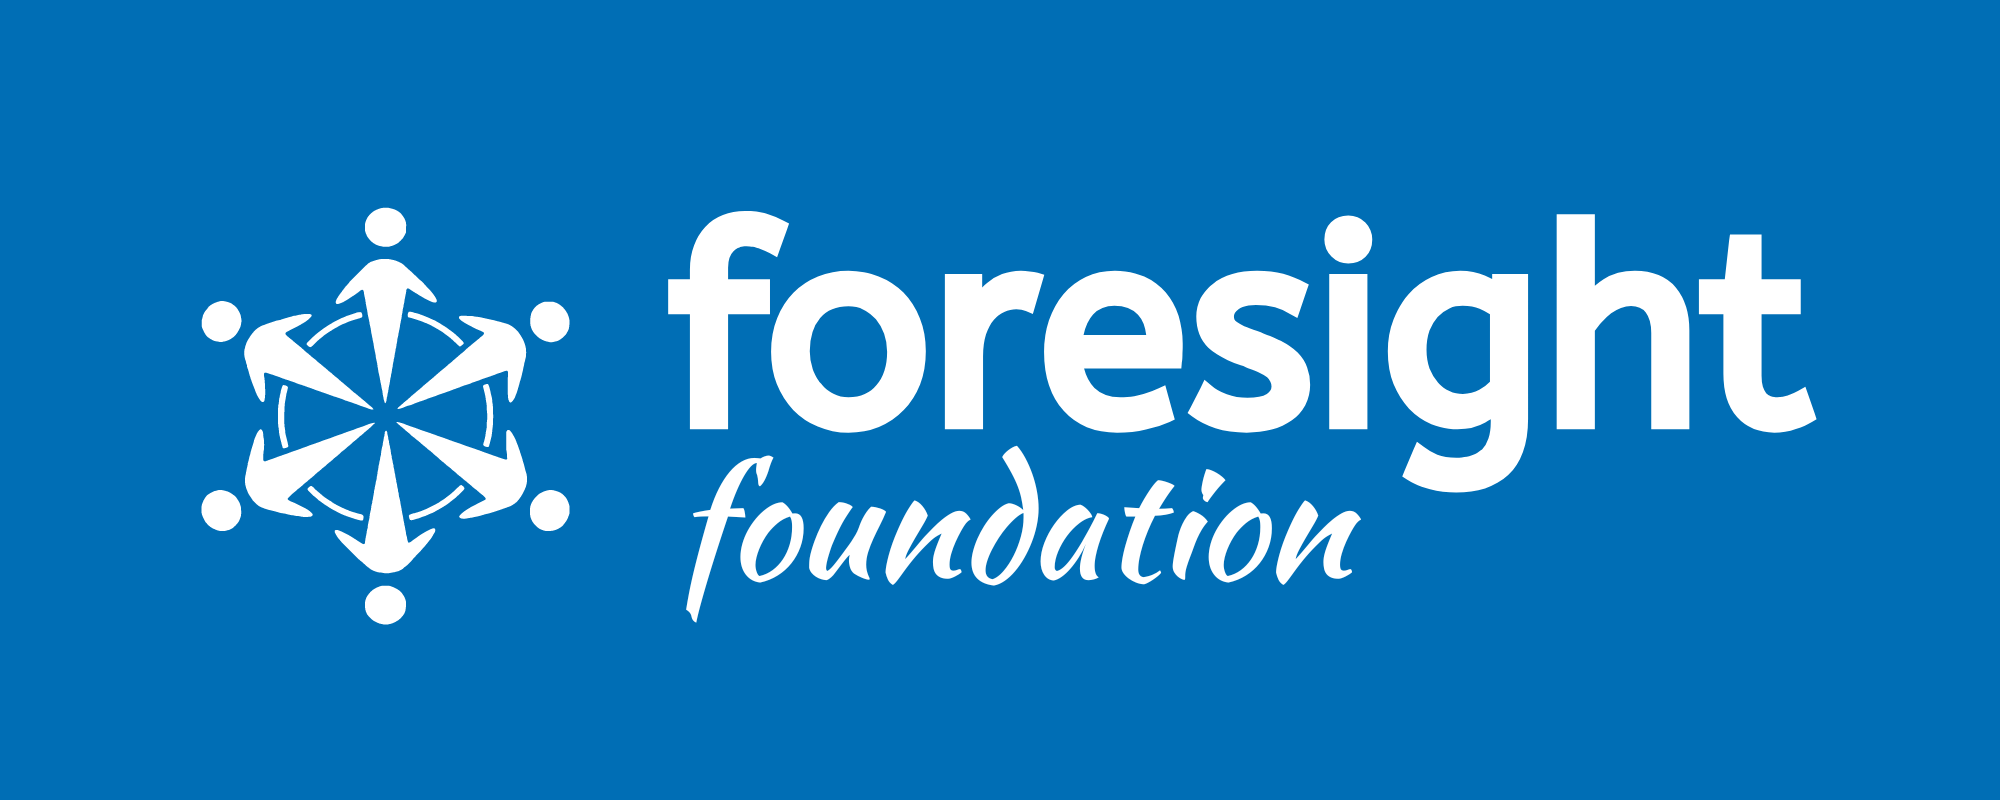 Foresight Foundation Logo Blue Background